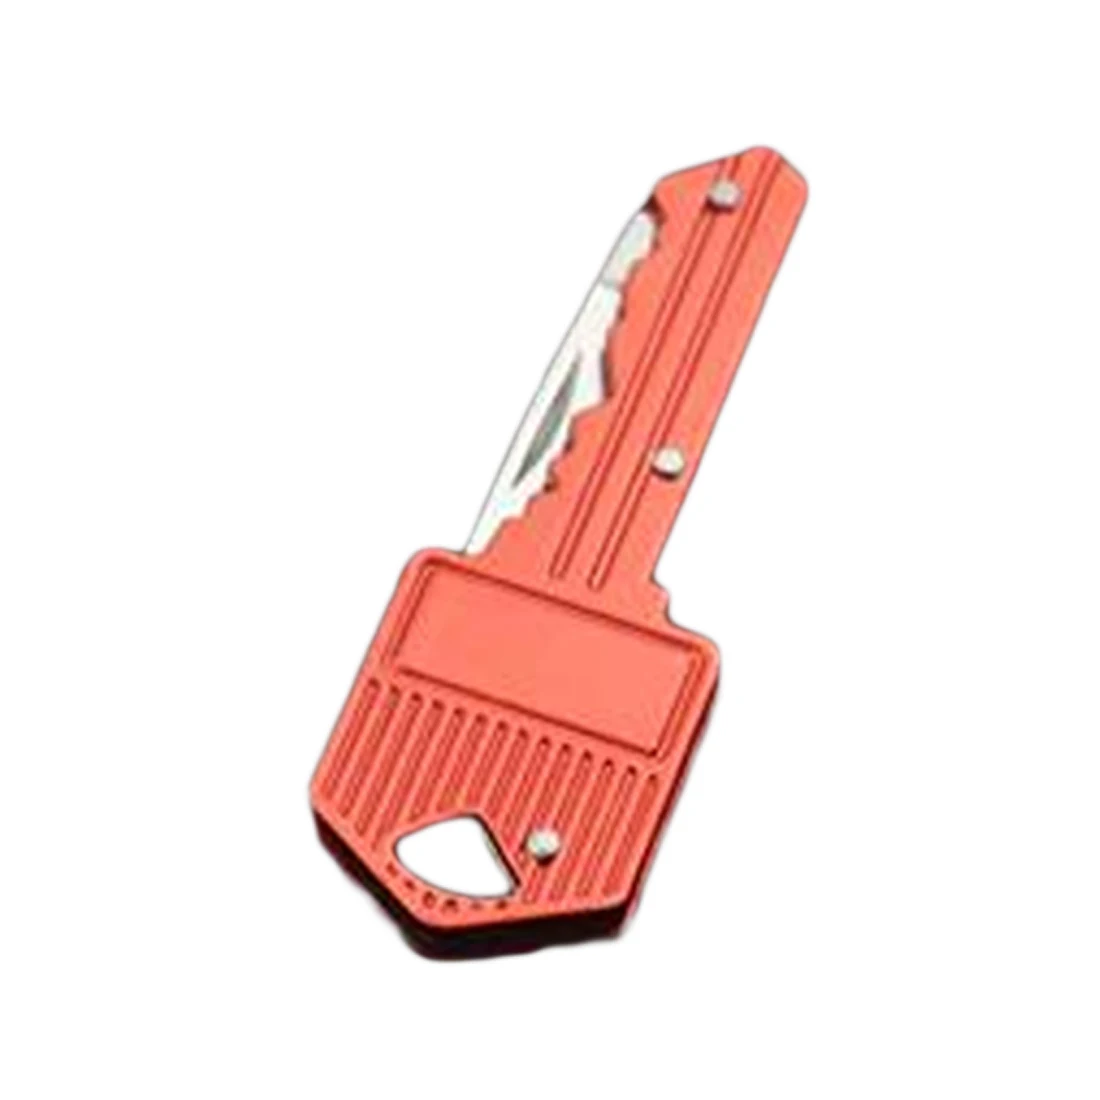 Складной портативный брелок для ключей нож письмо брелок инструмент для очистки початков кукурузы Открытый Отдых поход гаджет выживания набор брелок нож инструмент - Цвет: Красный